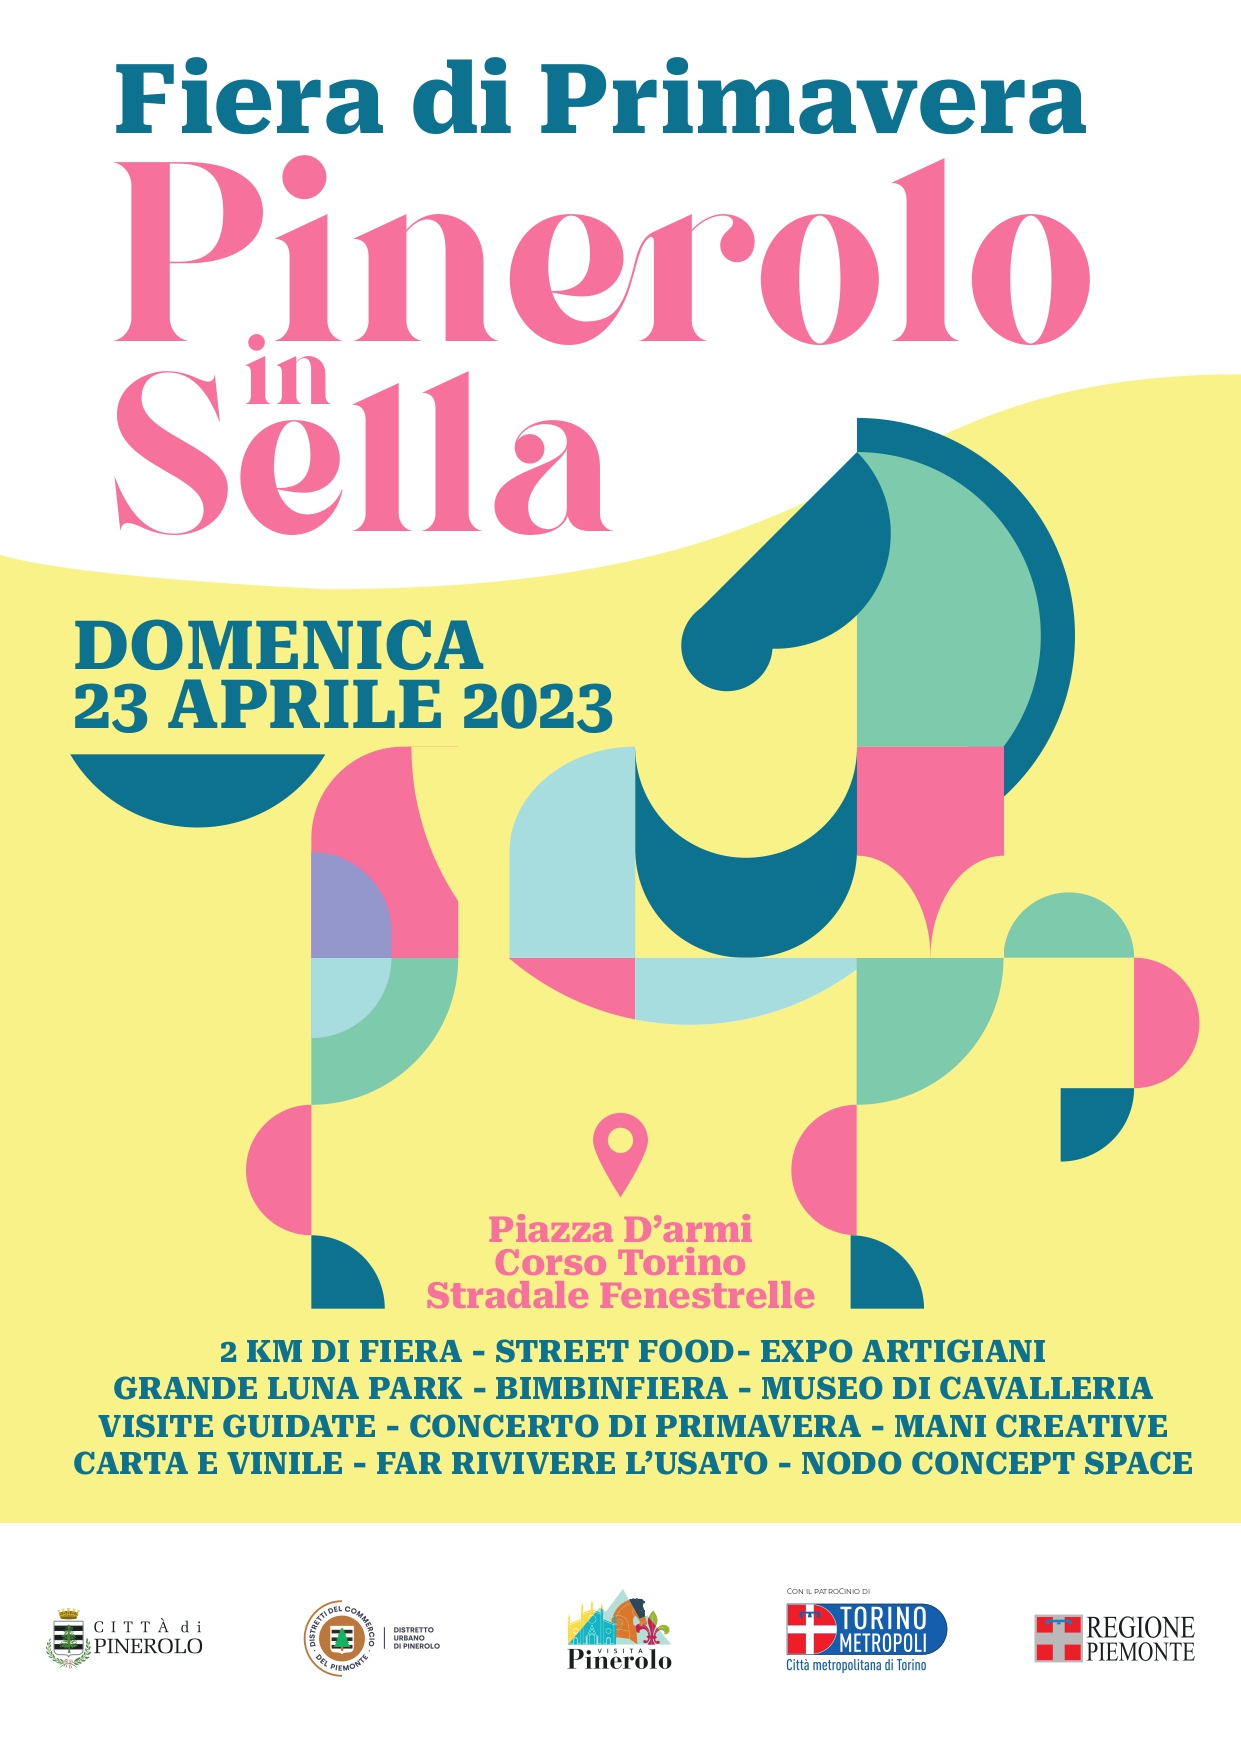 Locandina evento Pinerolo in sella domenica 23 aprile 2023